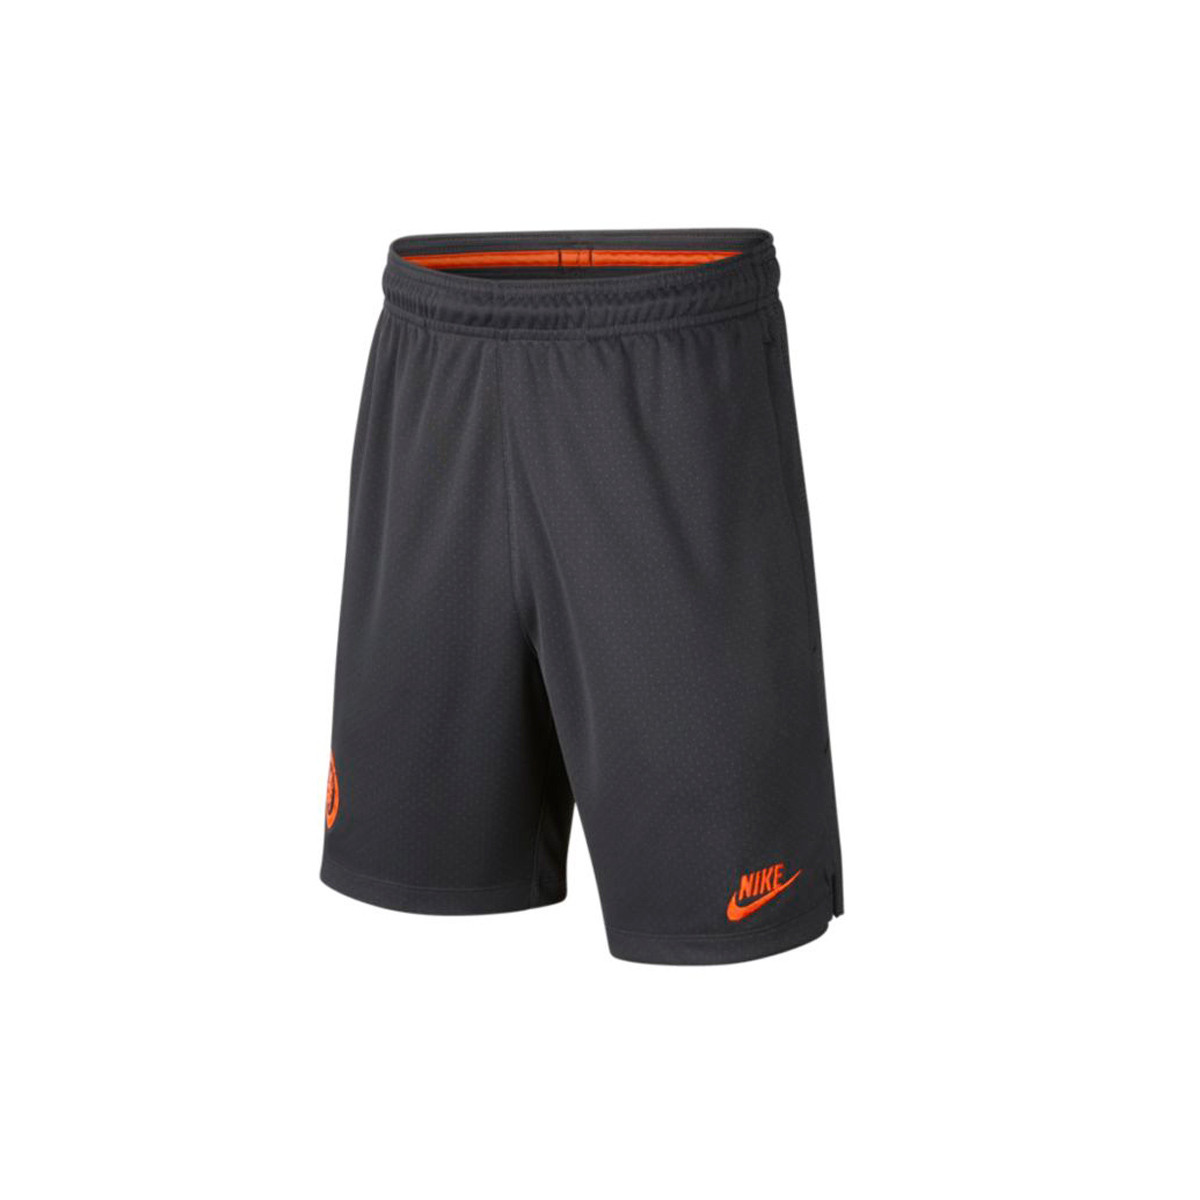 black and orange basketball shorts